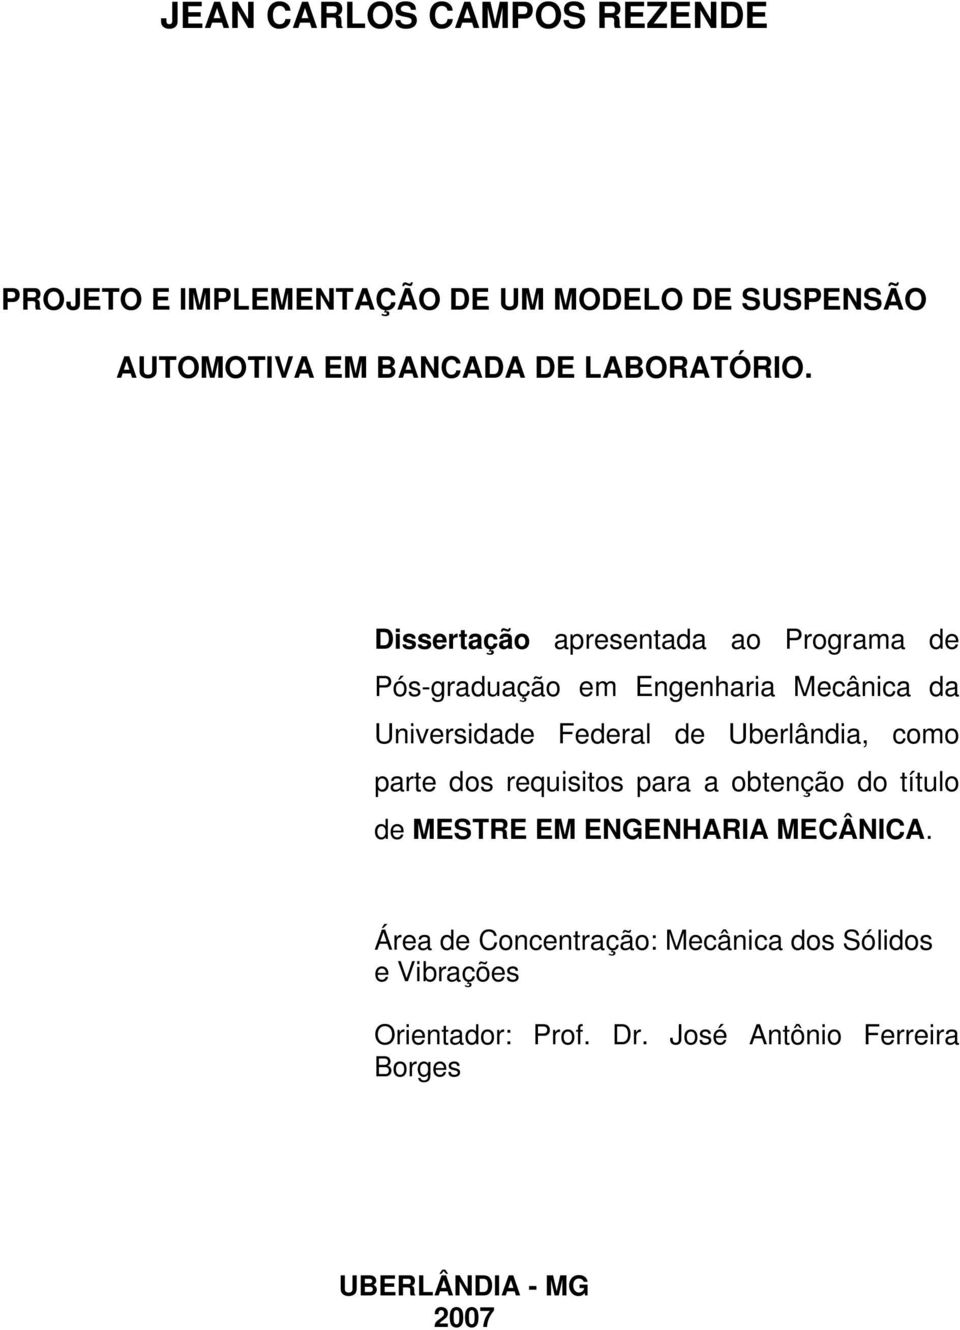 Dissertação apresentada ao Programa de Pós-graduação em Engenharia Mecânica da Universidade Federal de